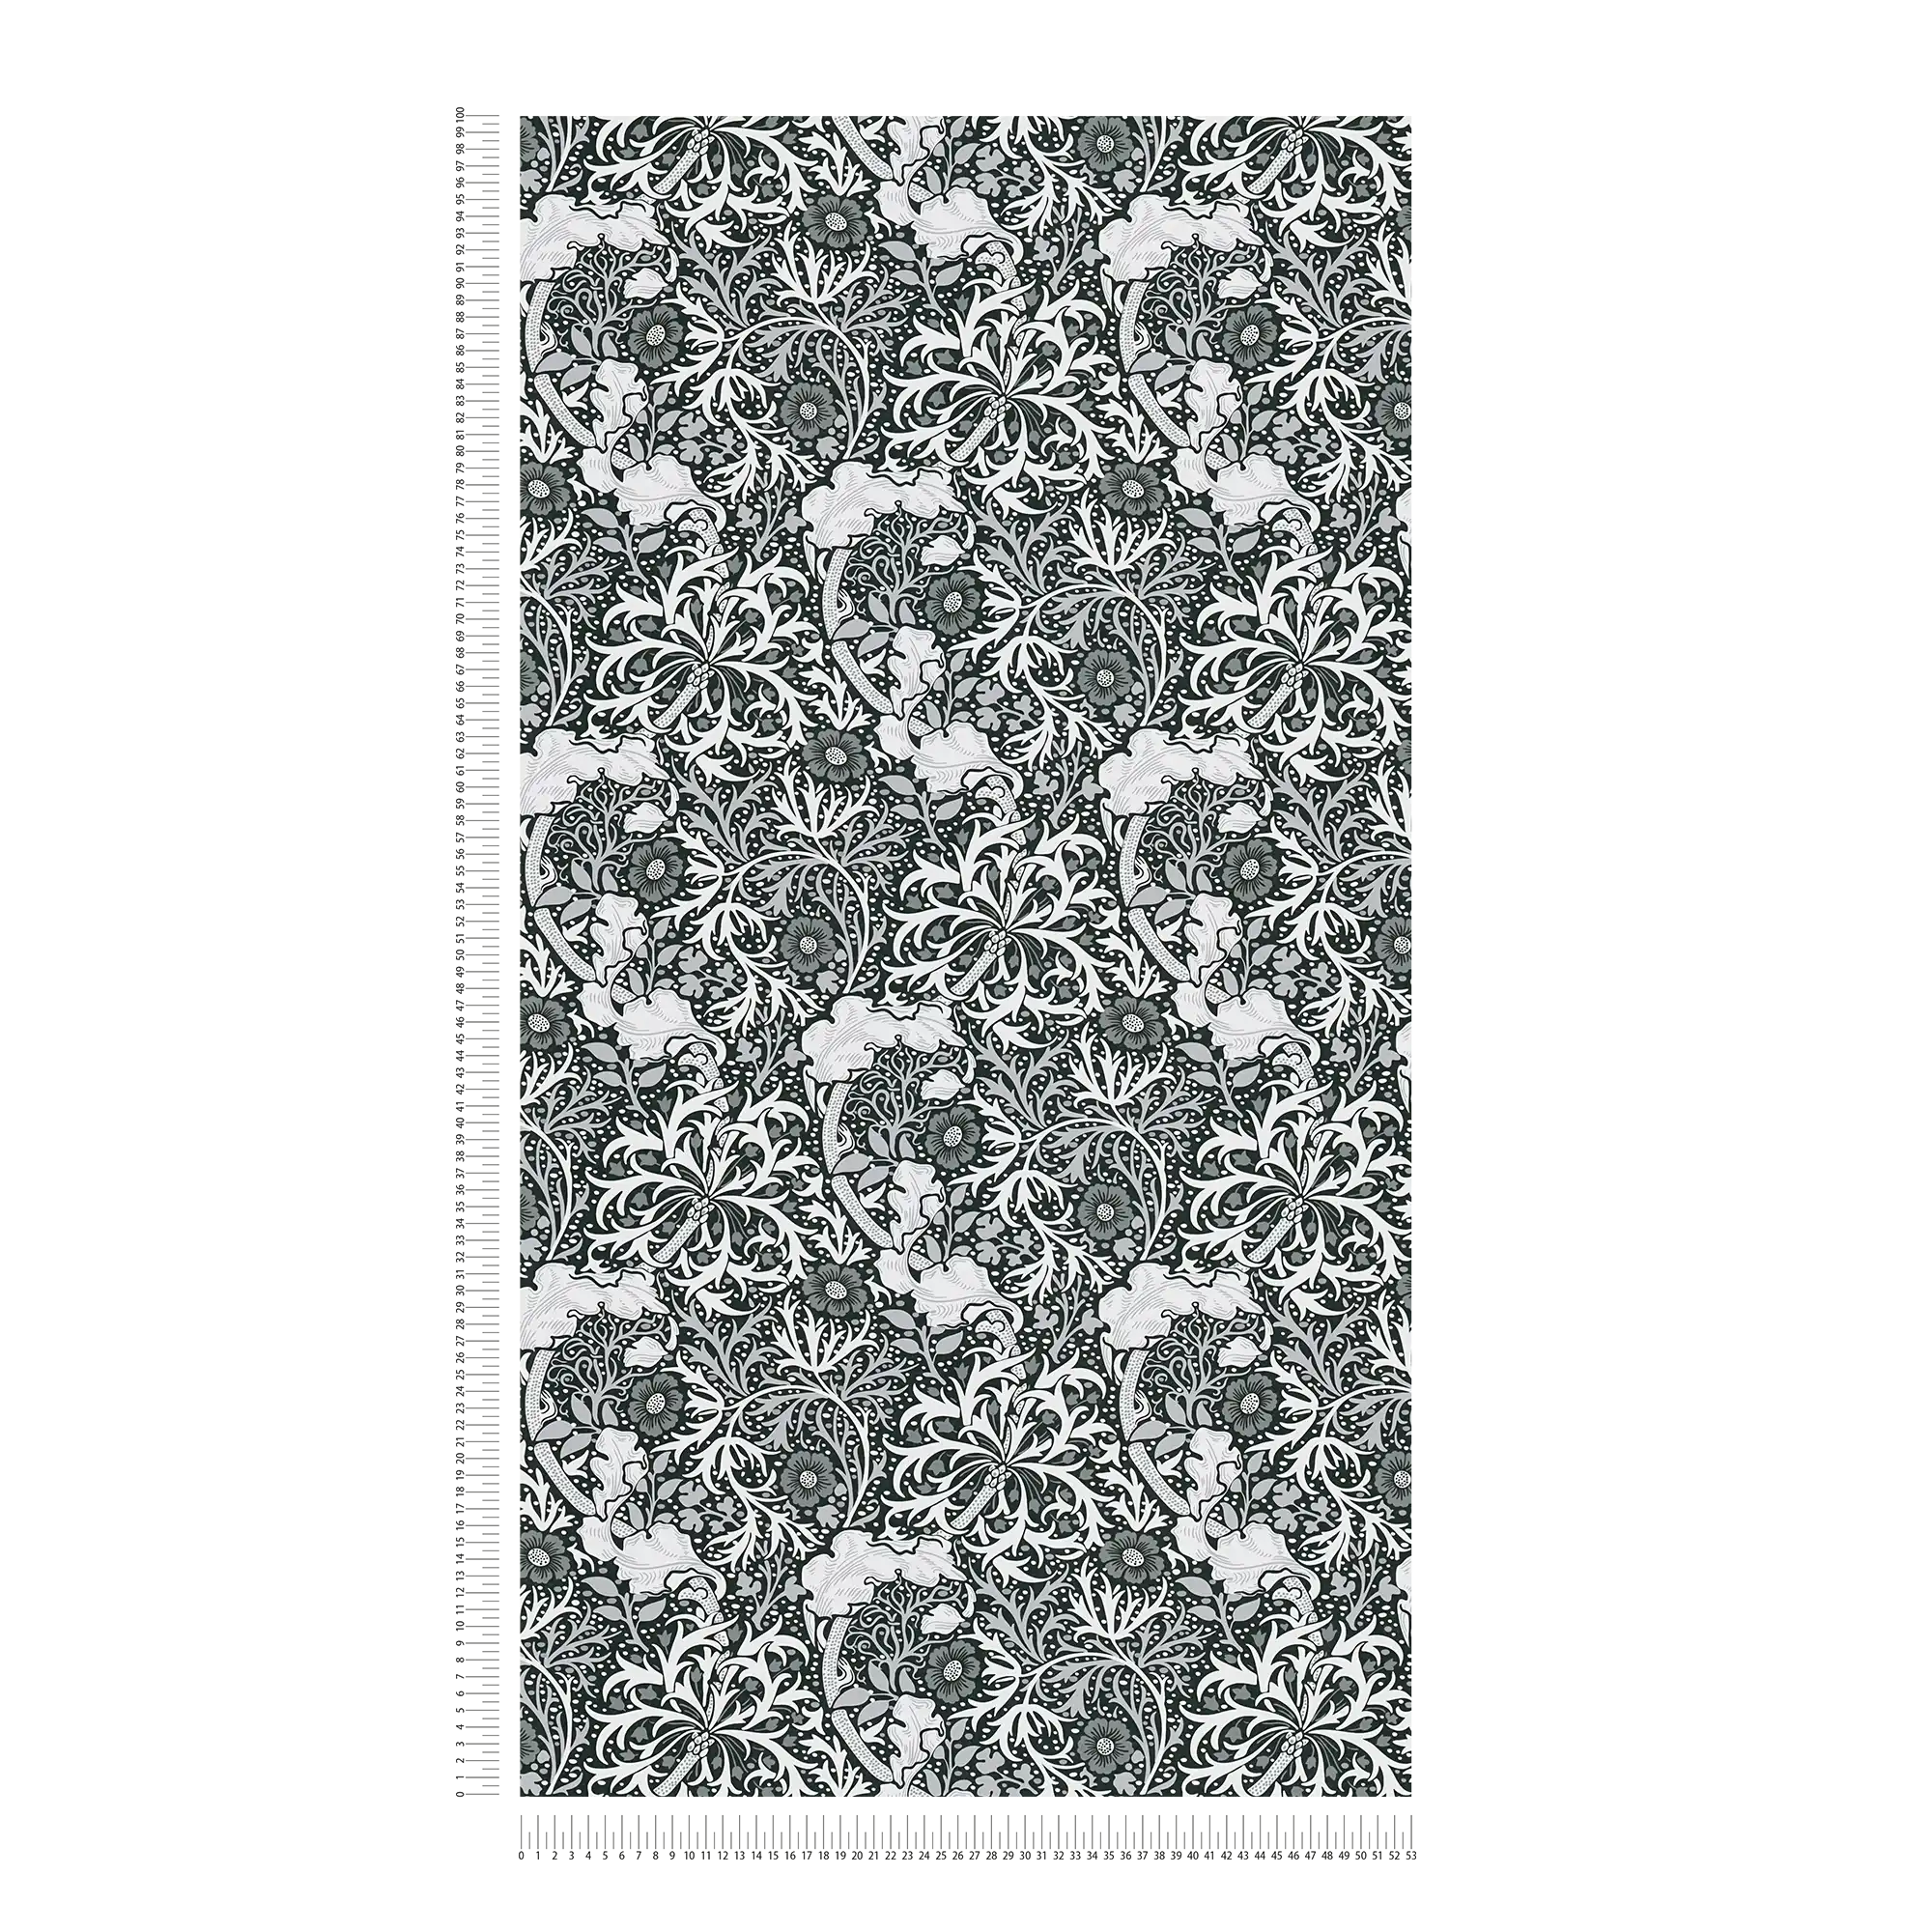             Vliesbehang met bloemmotief ranken en bloemen - wit, zwart, grijs
        